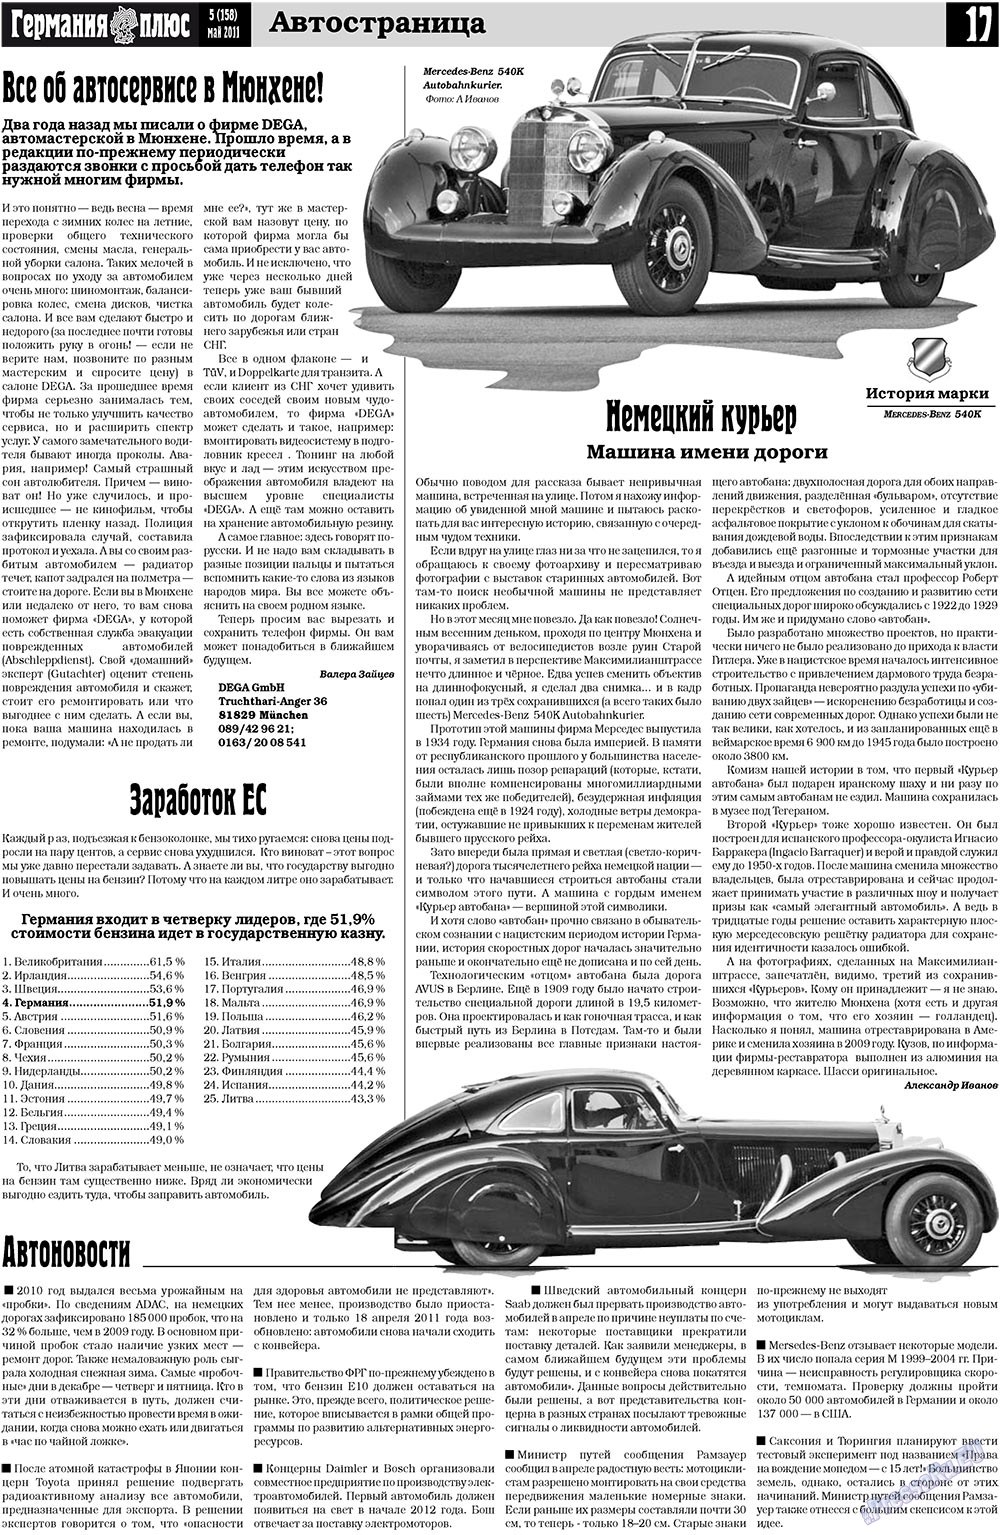 Германия плюс, газета. 2011 №5 стр.17